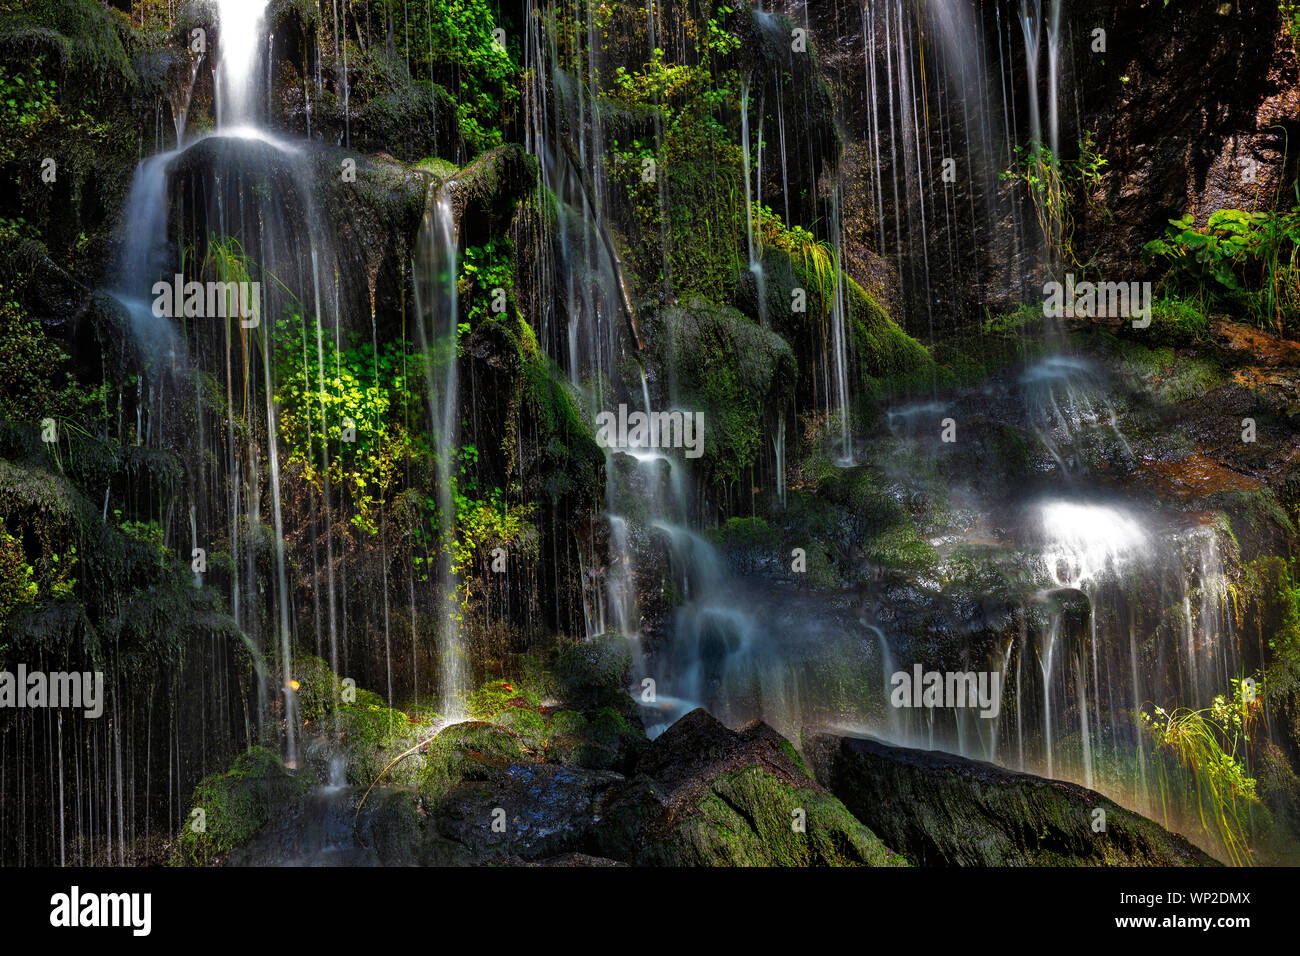 Fahler Waterfall, Feldberg, Black Forest, Germany Stock Photo